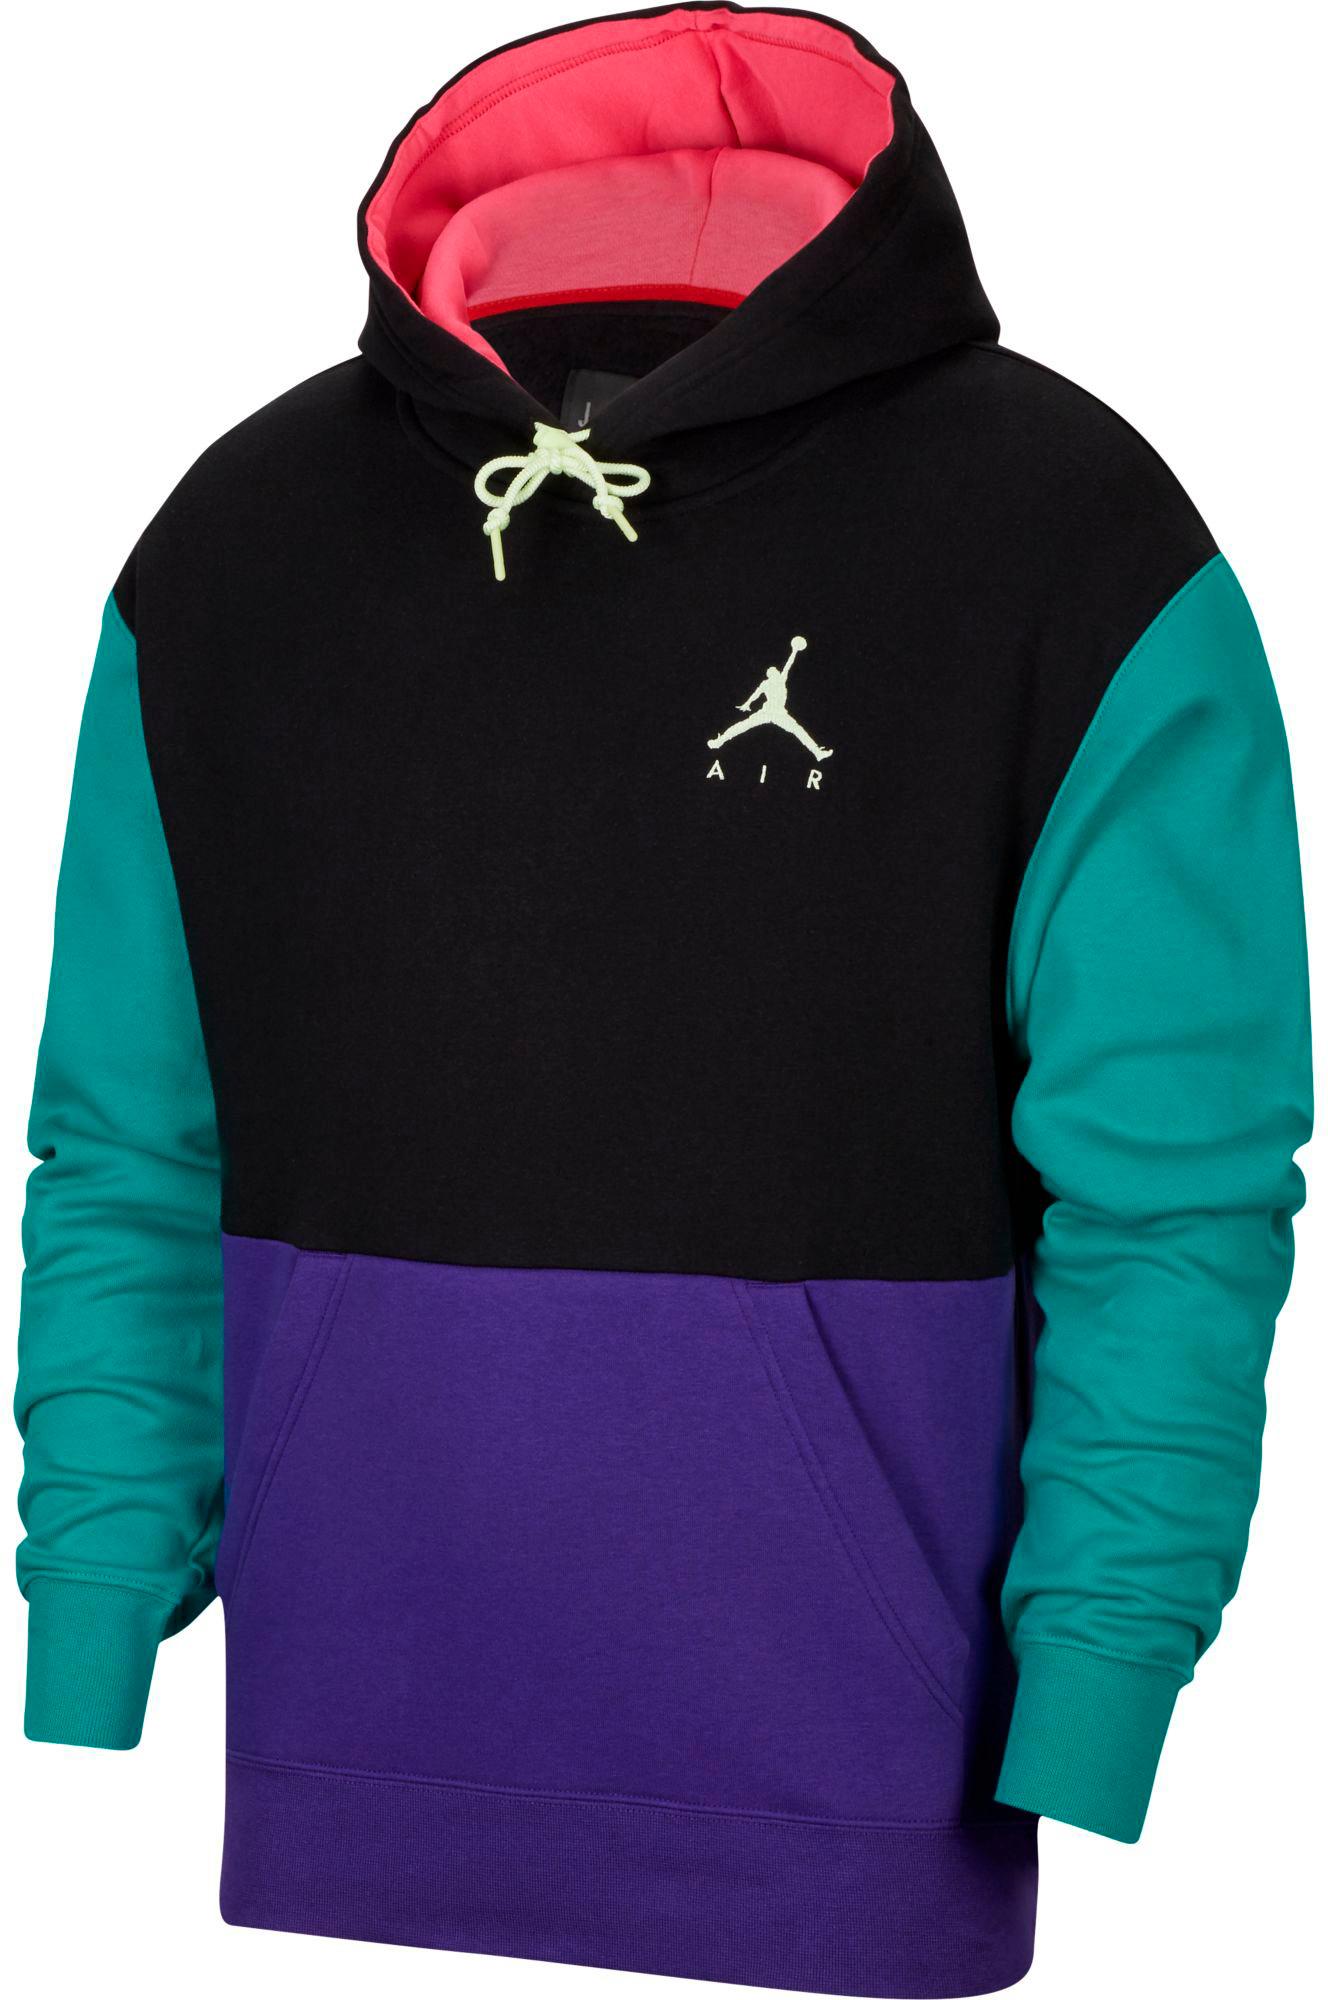 nike air hoodie purple